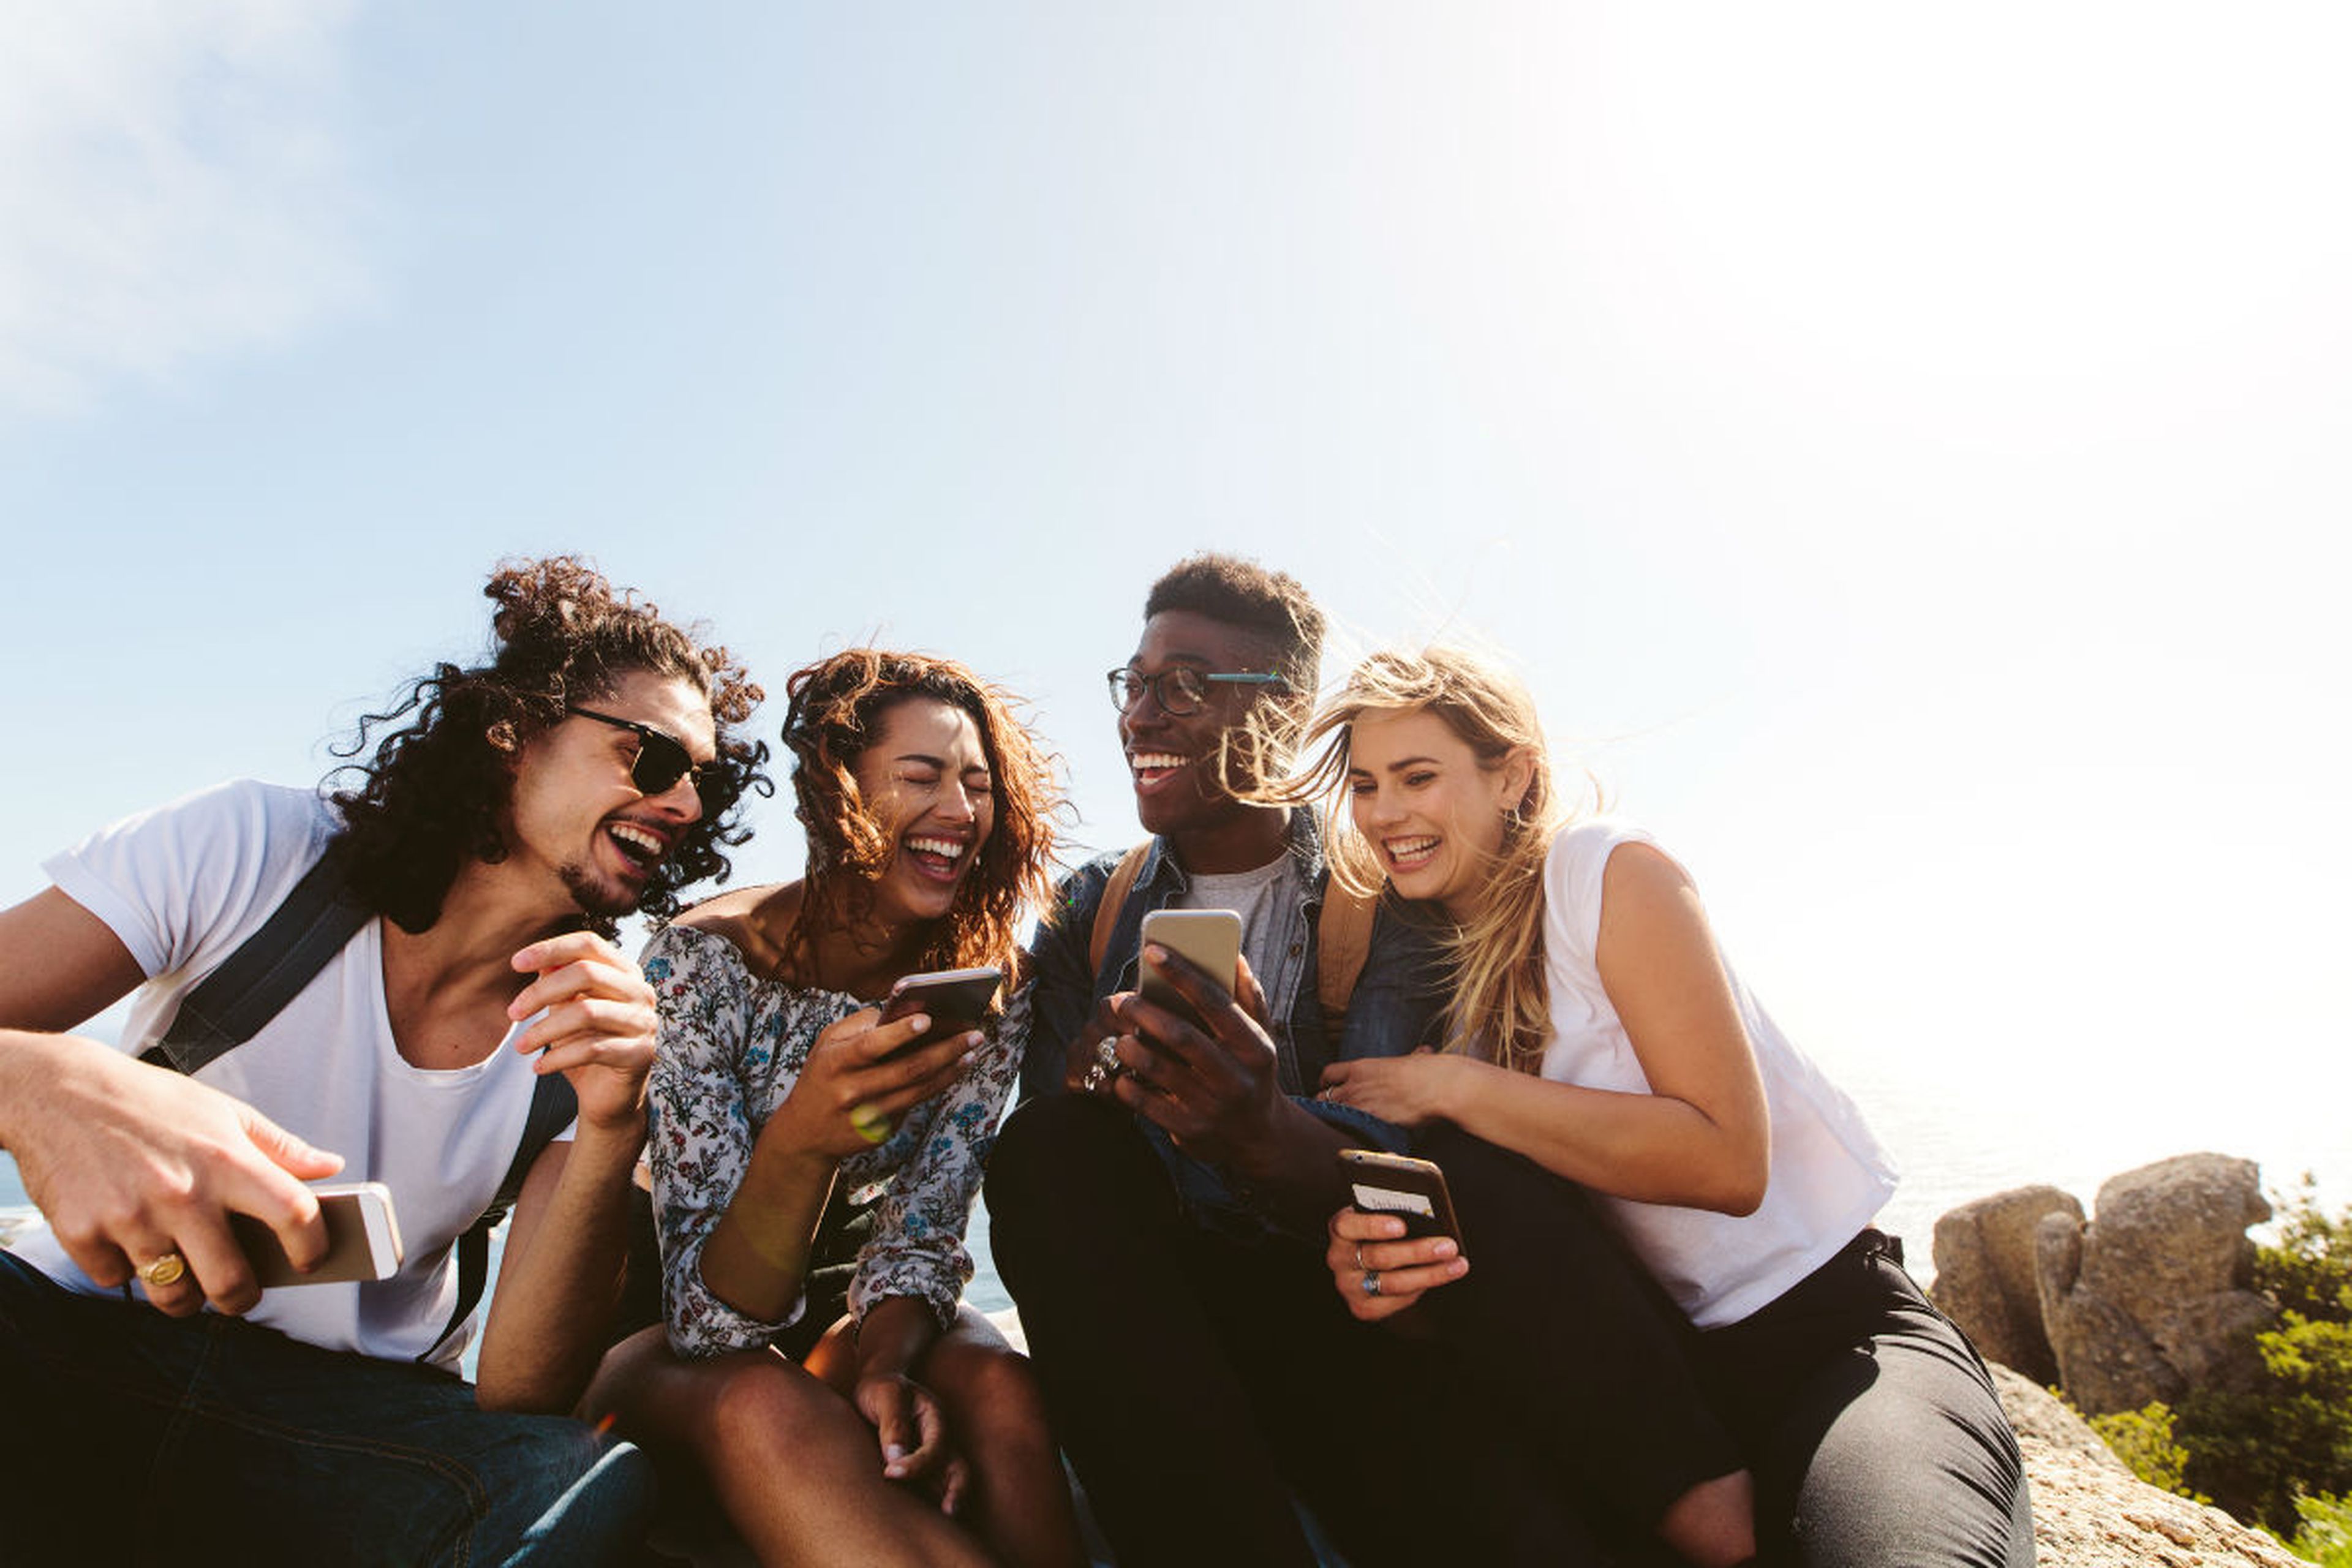 Cuatro millennials se ríen mientras se relacionan con sus smartphones.